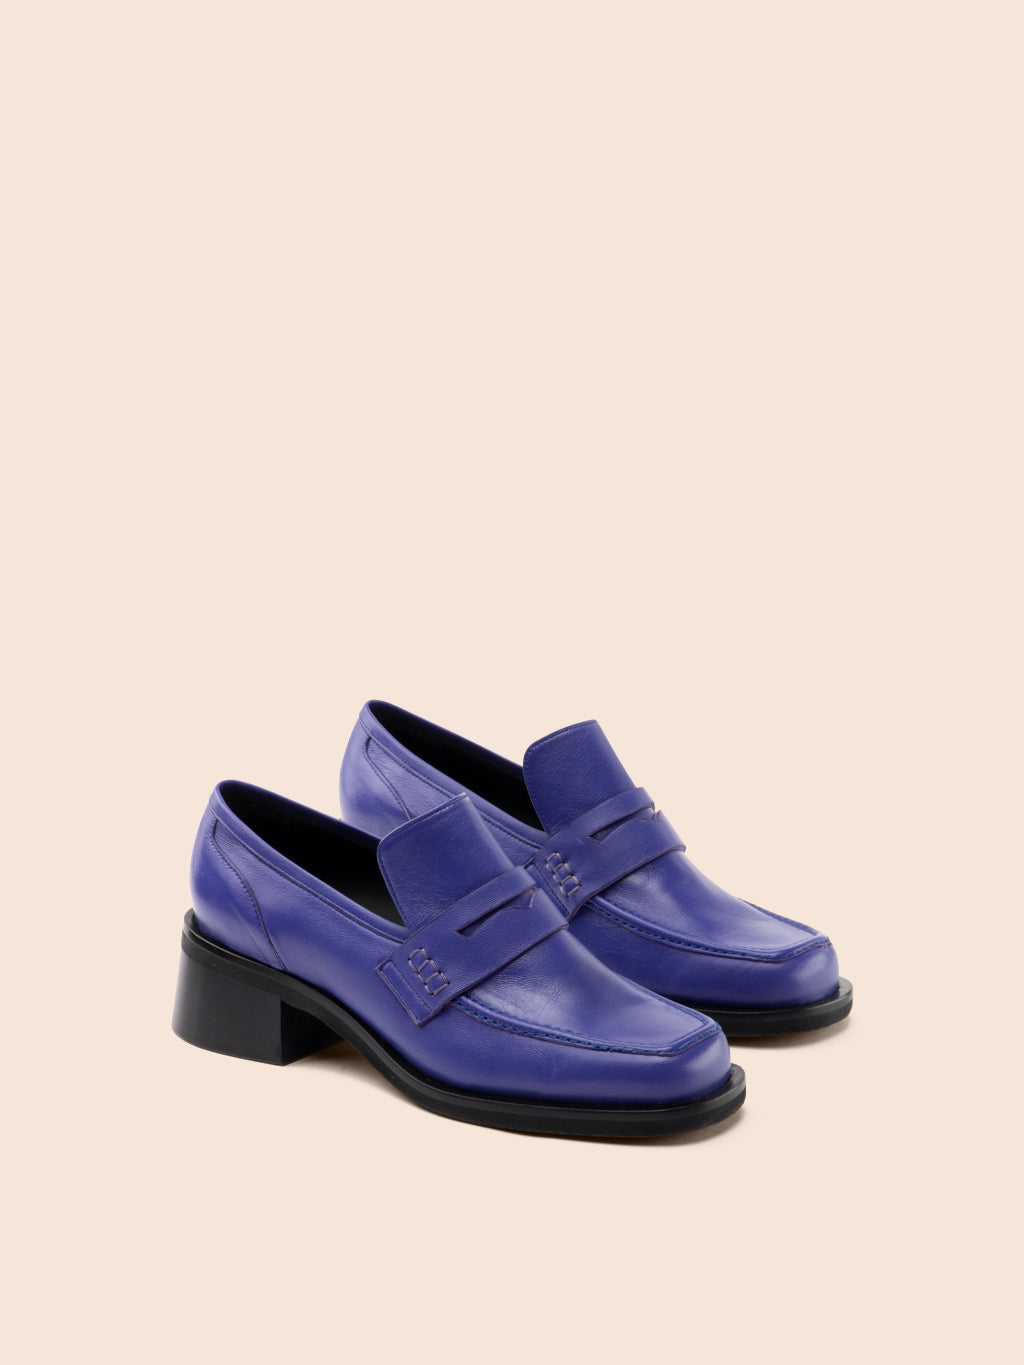 Marlia Purple Loafer